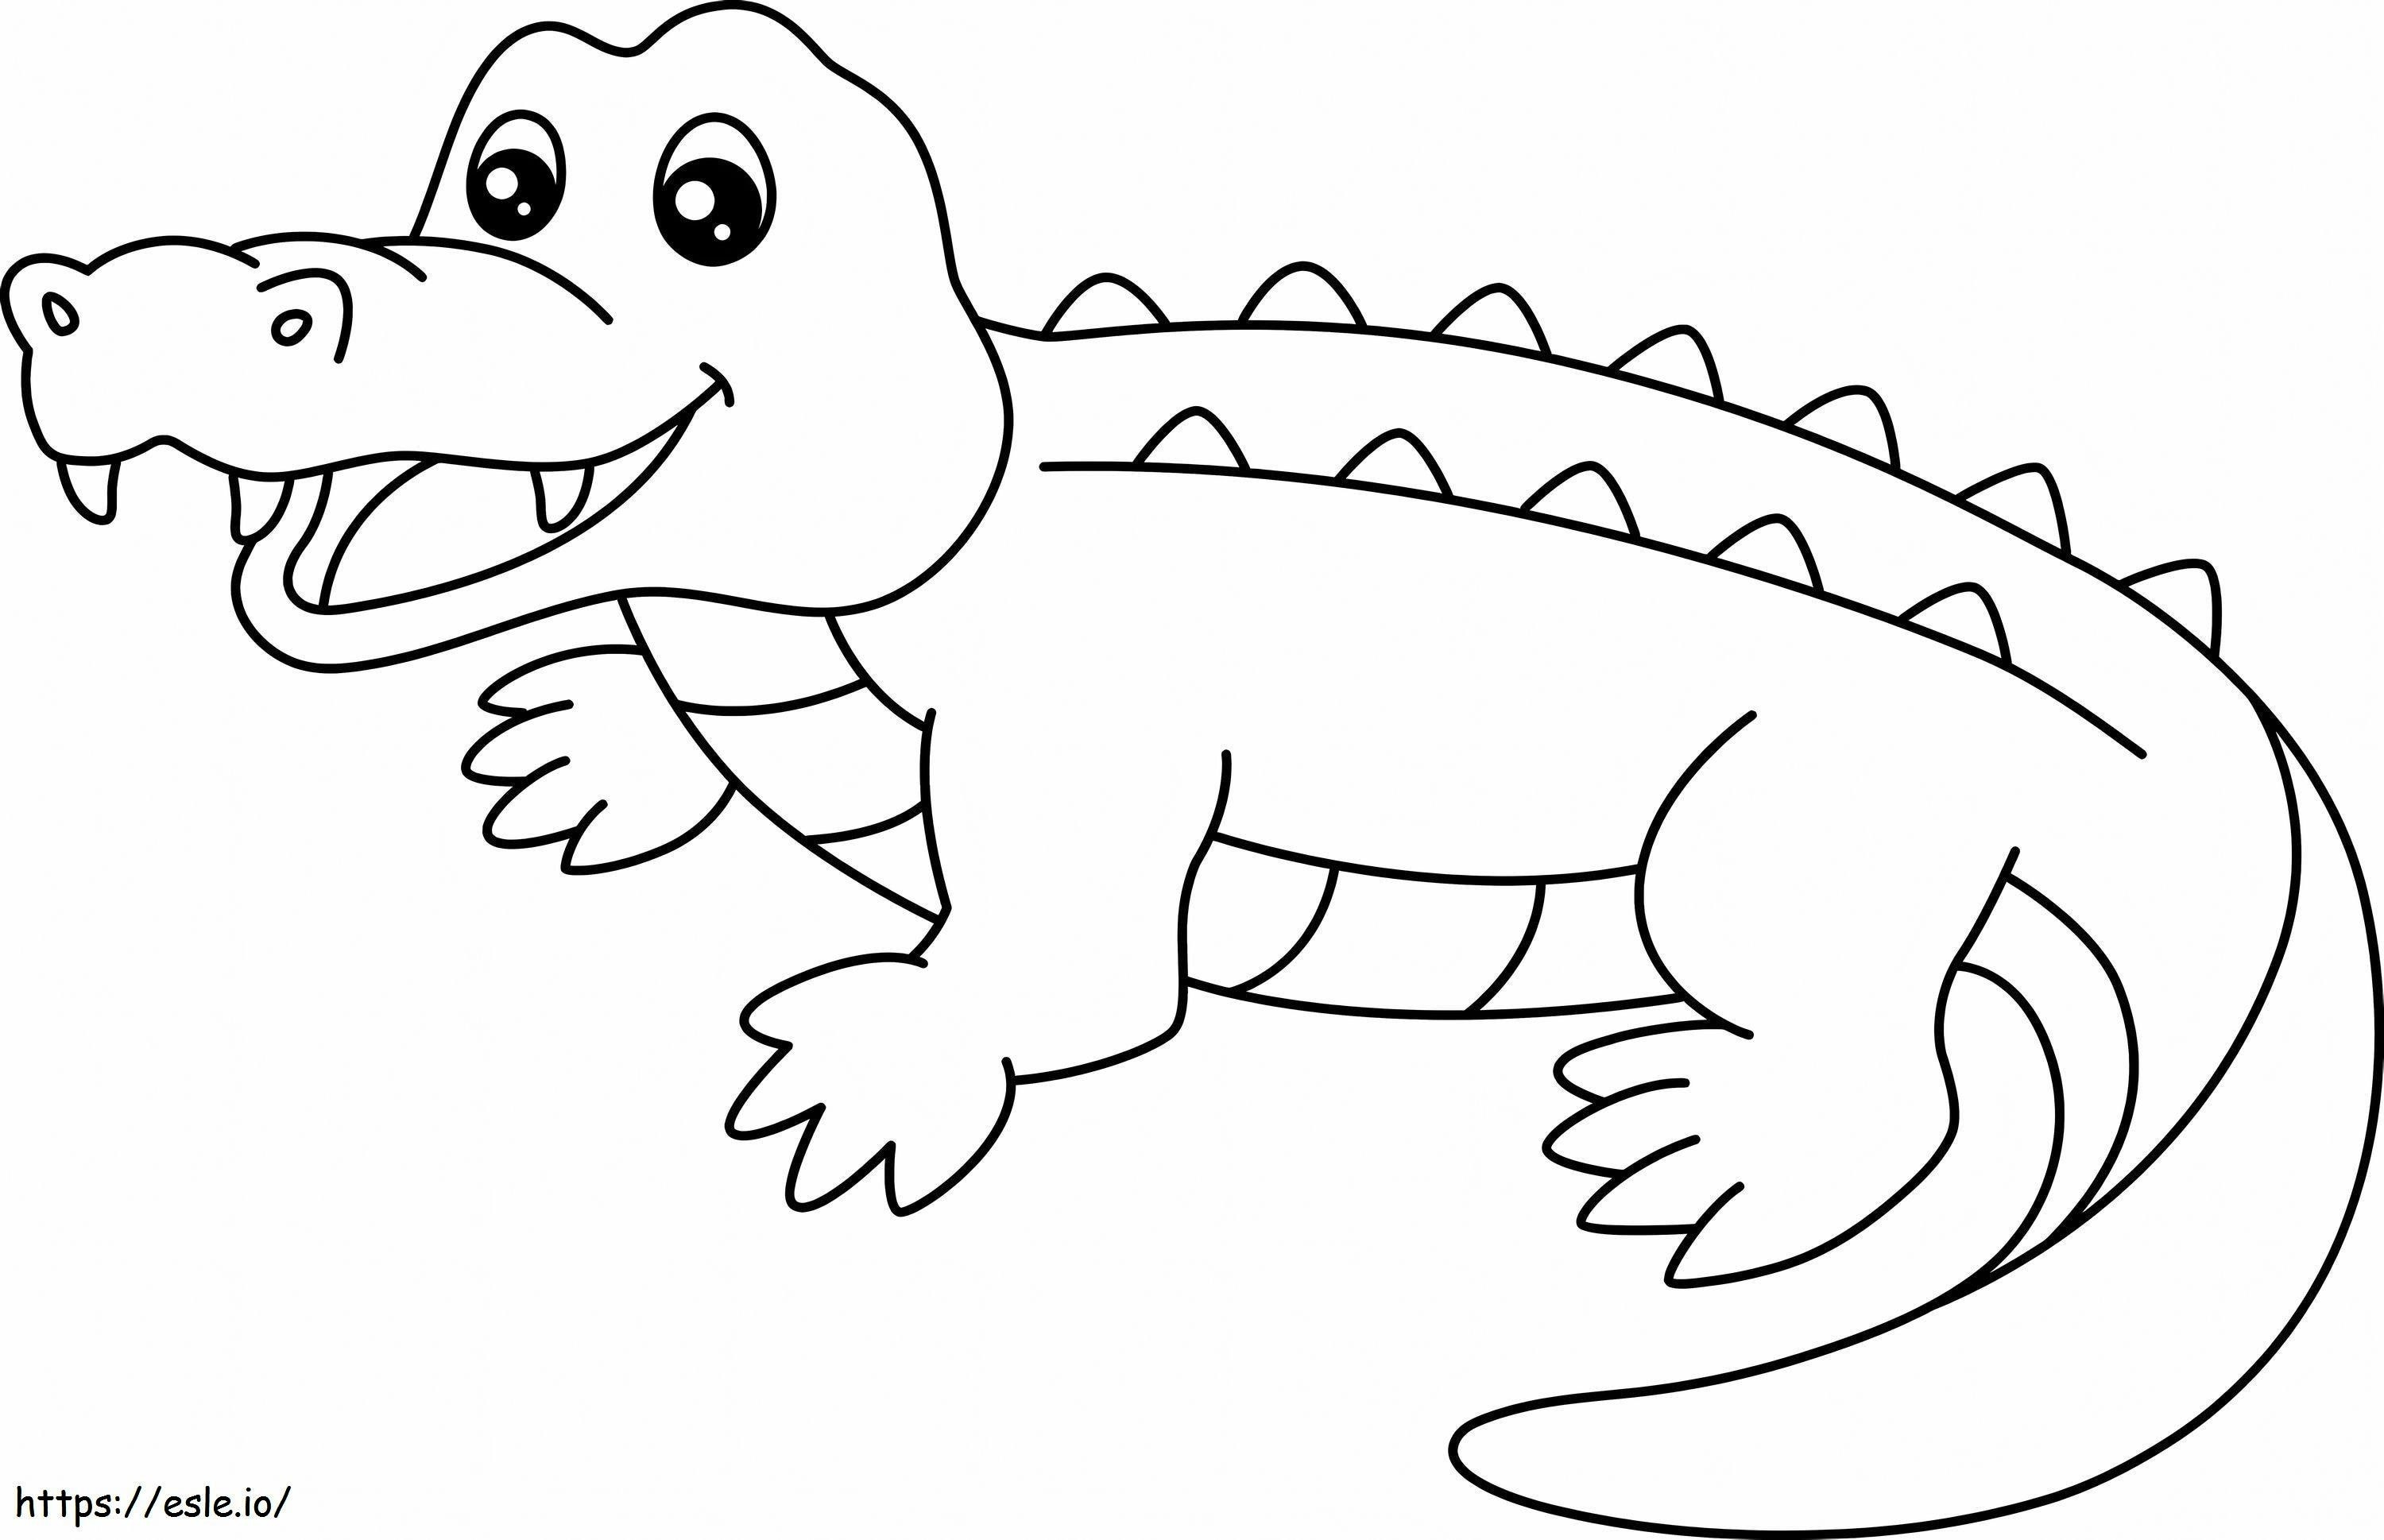 Coloriage Génial Crocodile 1 à imprimer dessin